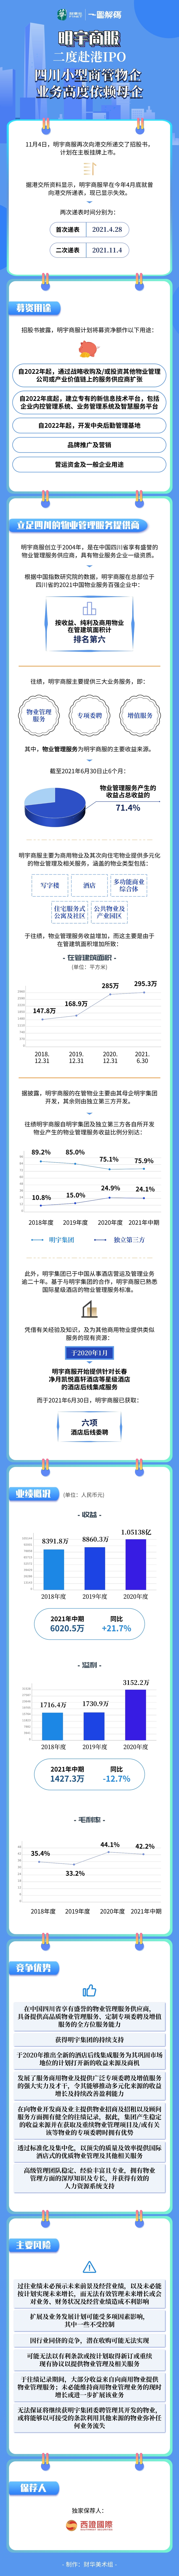 一圖解碼：明宇商服二度赴港IPO 四川小型商管物企 業務高度依賴母企